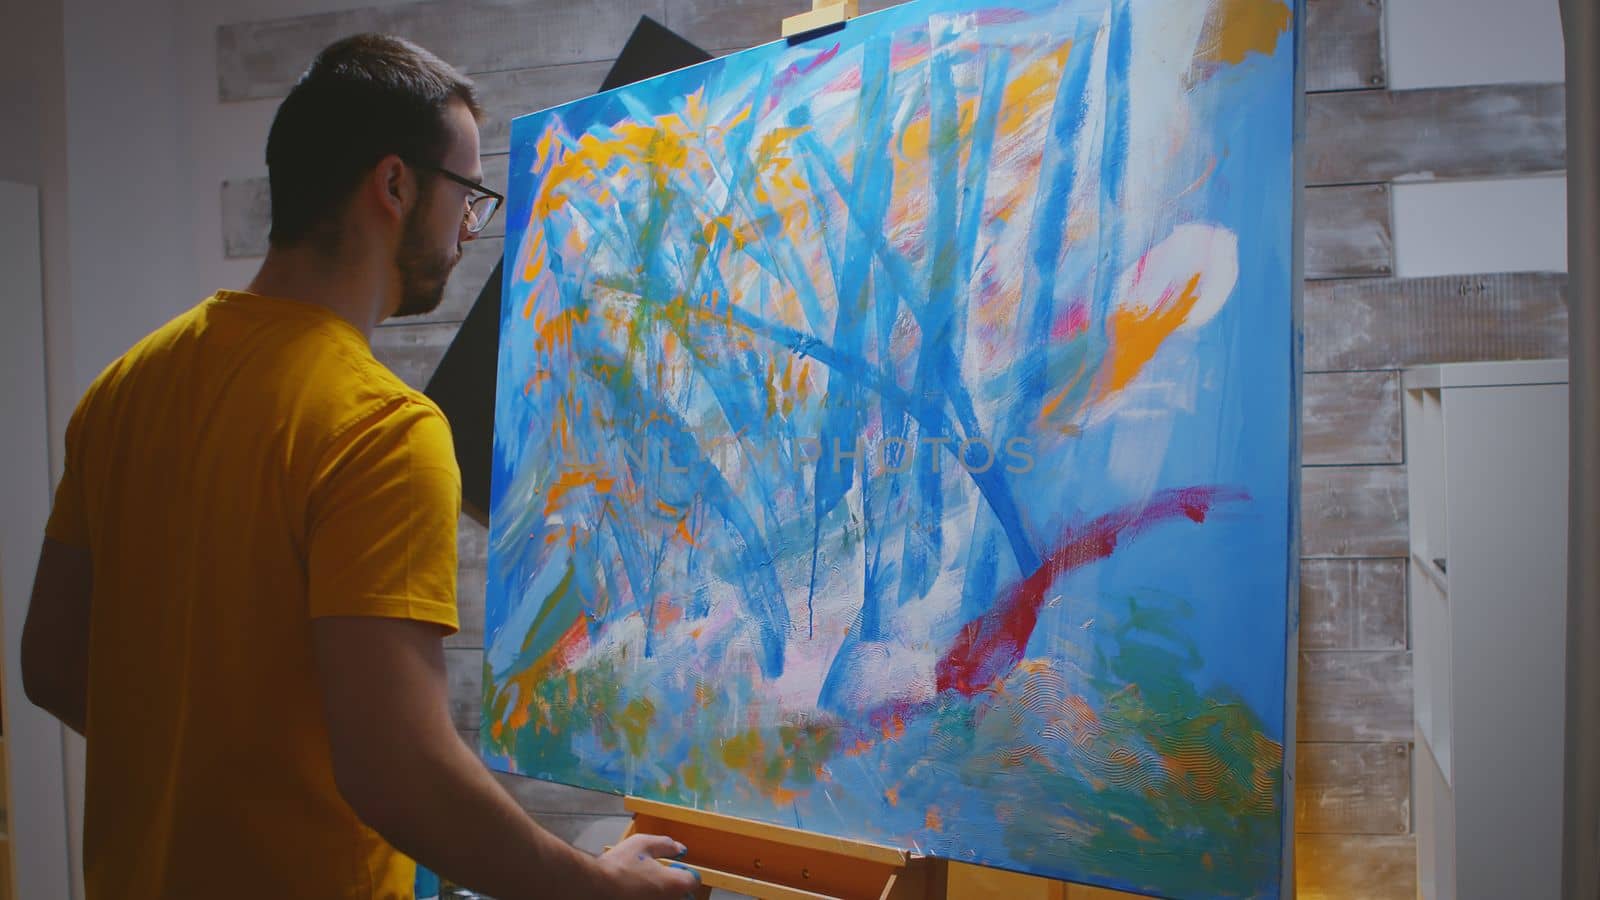 Artist paints on large canvas by DCStudio